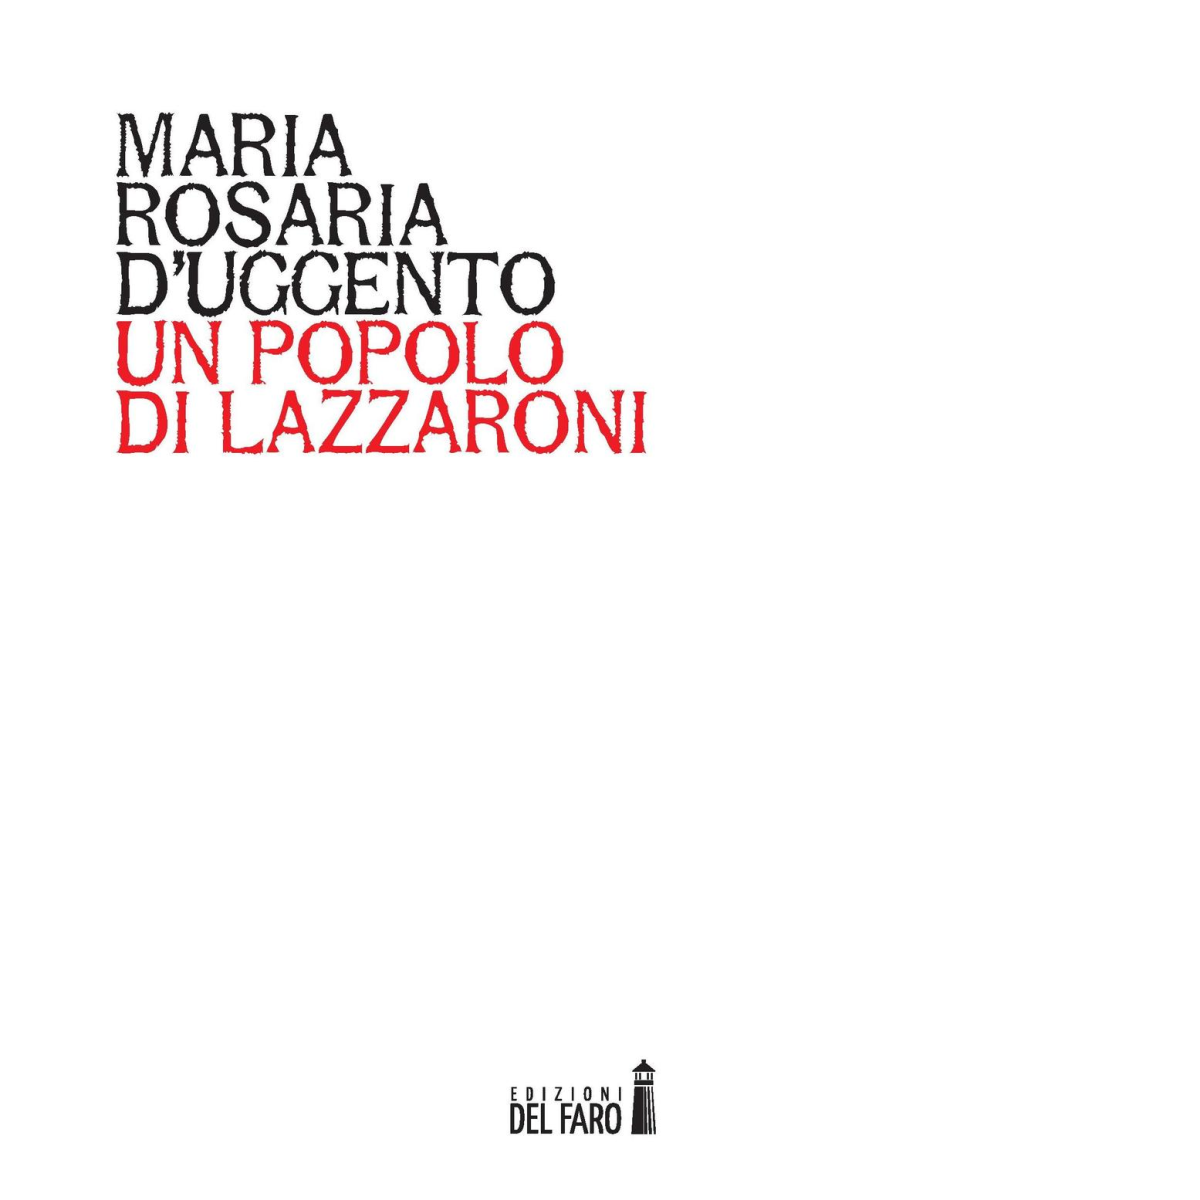 Un popolo di lazzaroni di D'Uggento Maria Rosaria - Del Faro, 2016 libro usato